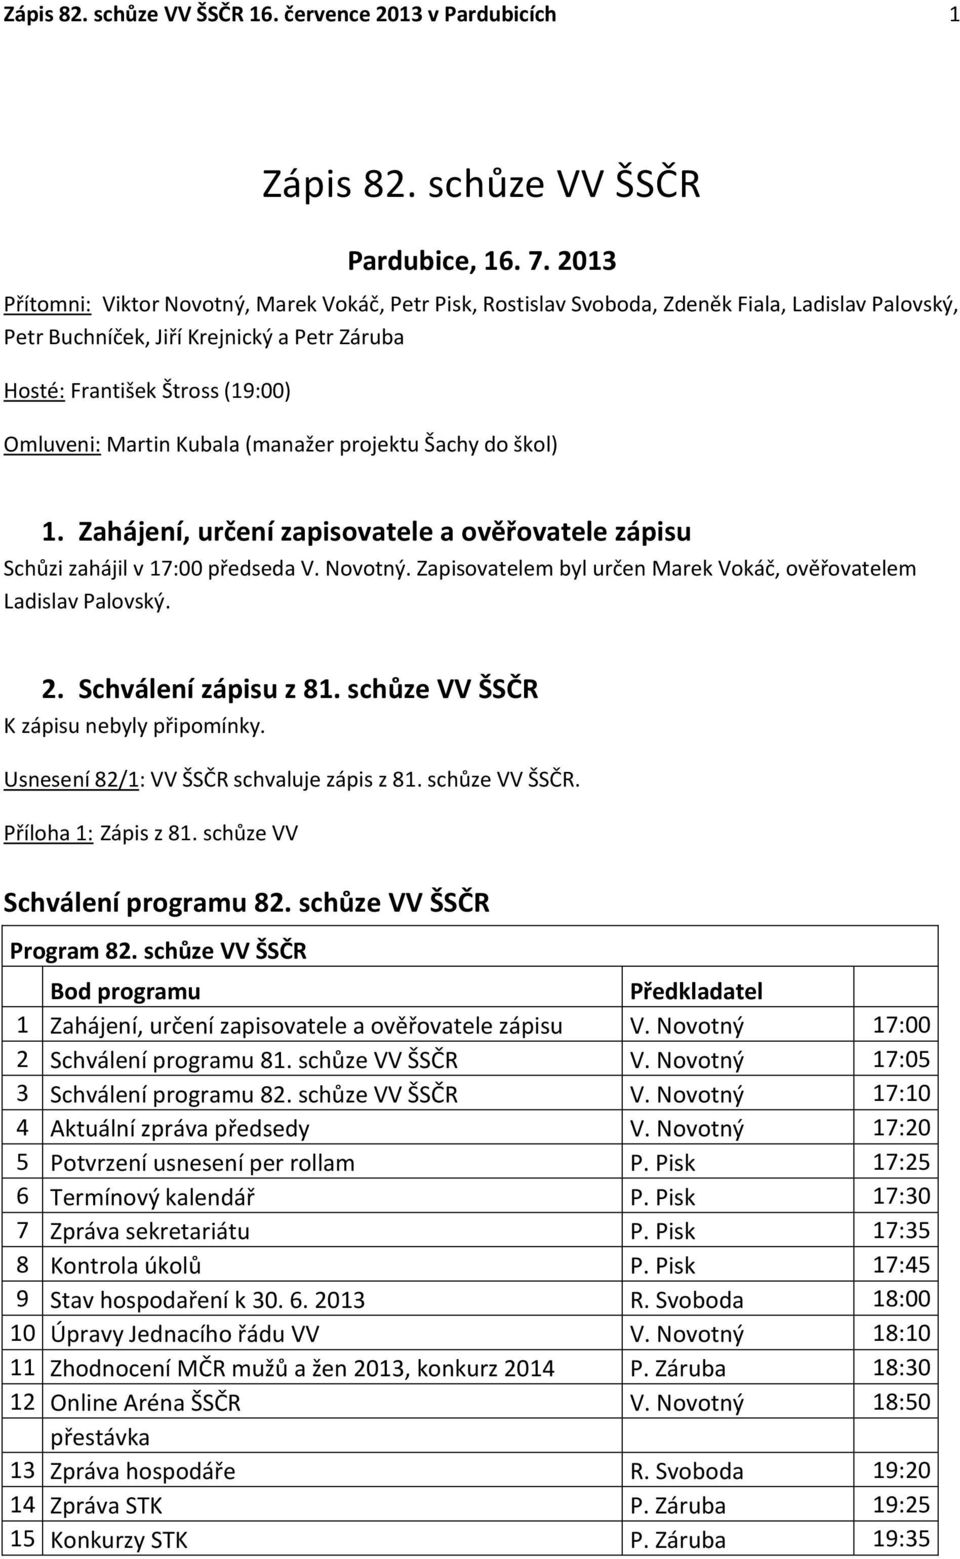 Zápis 82. schůze VV ŠSČR - PDF Free Download